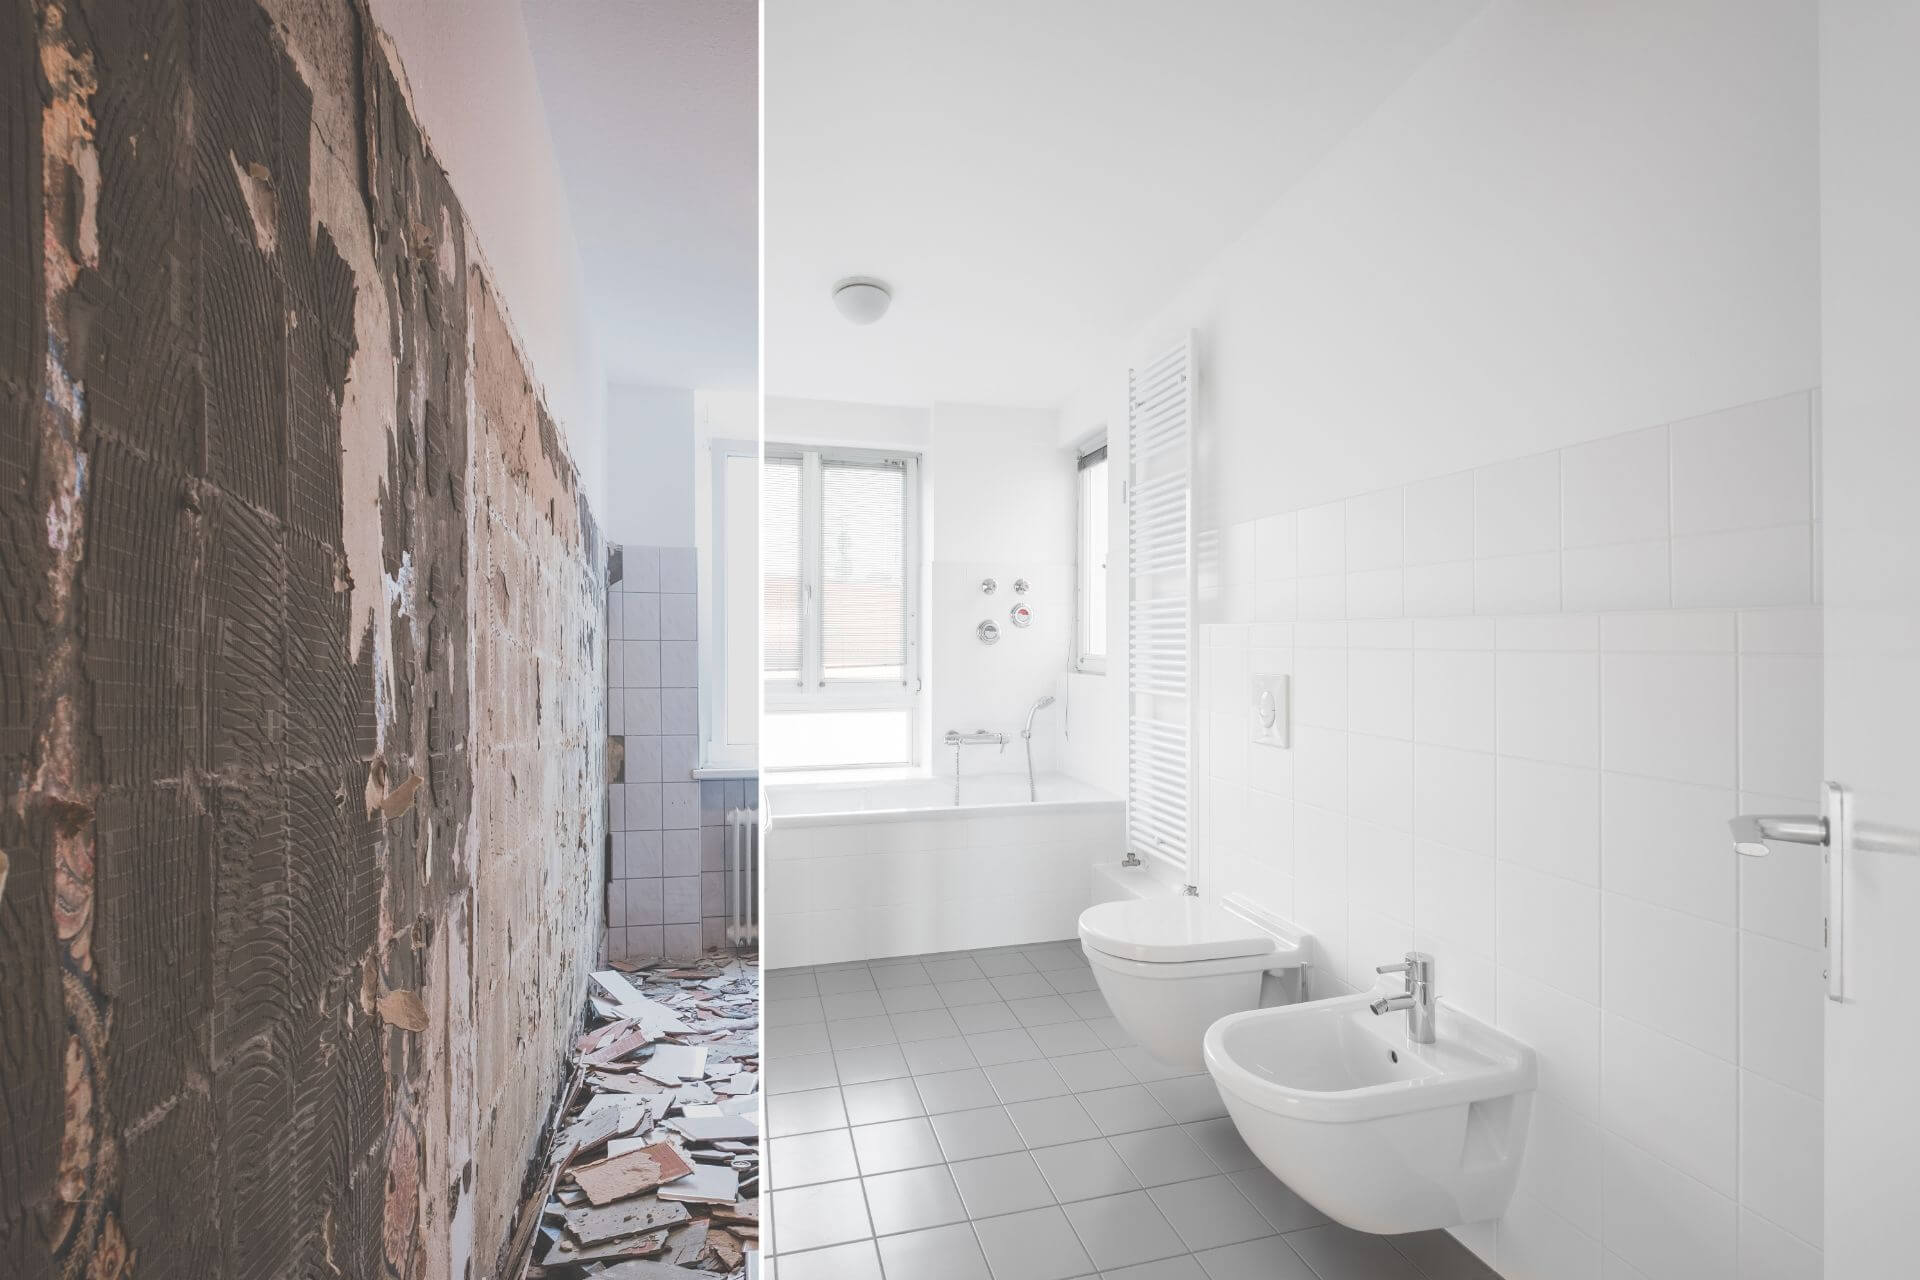 kylpyhuone ennen ja jälkeen